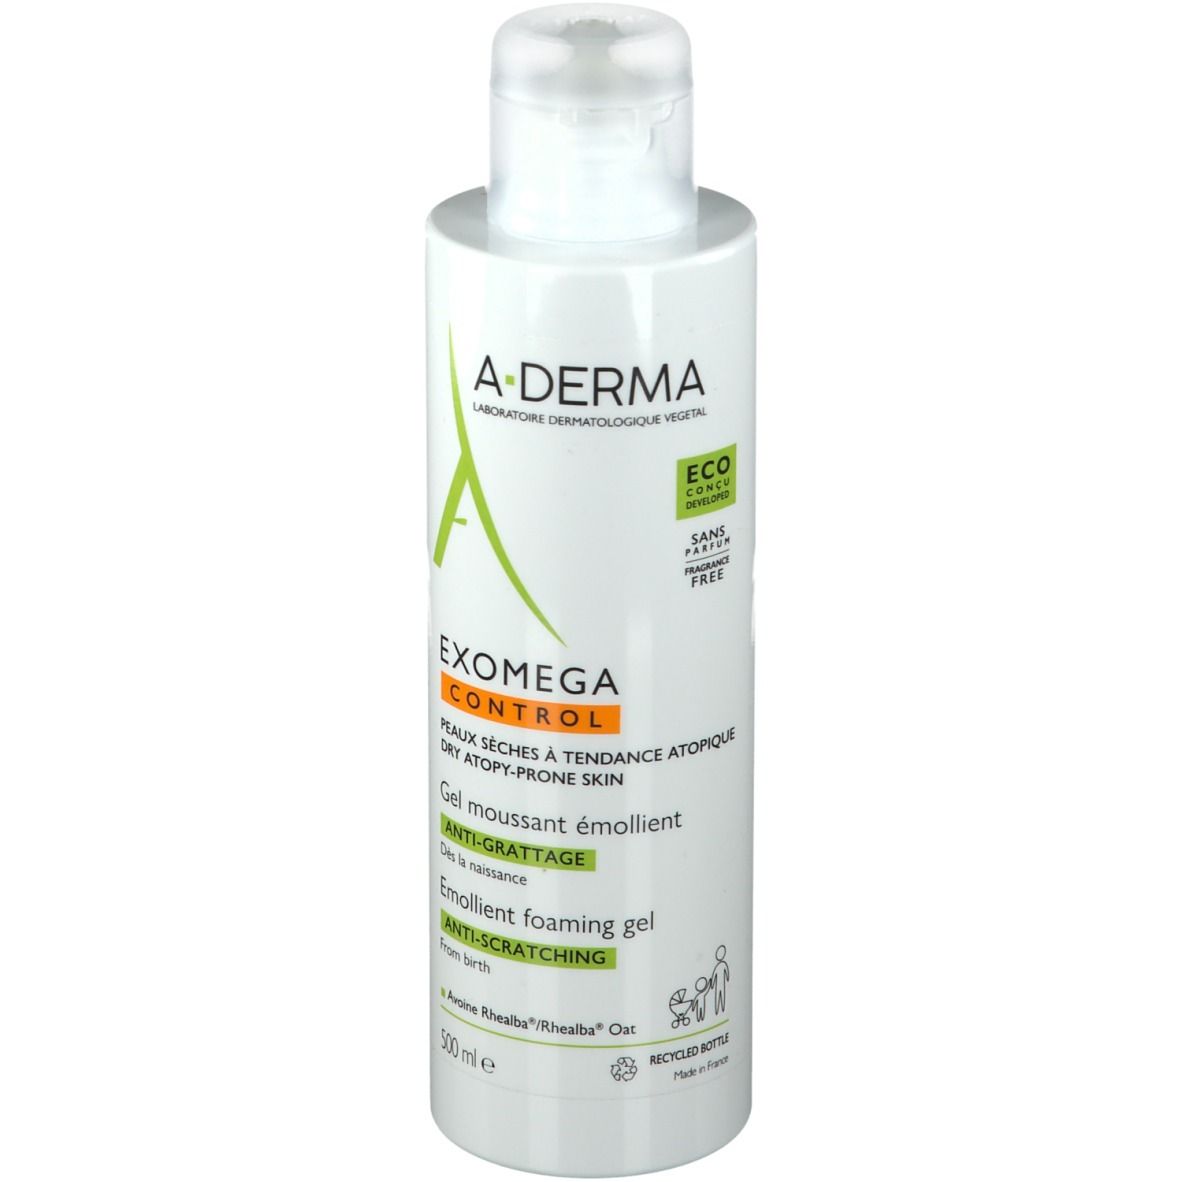 ADERMA (Pierre Fabre It.SpA) A-Derma Exomega Control Reinigungsgel